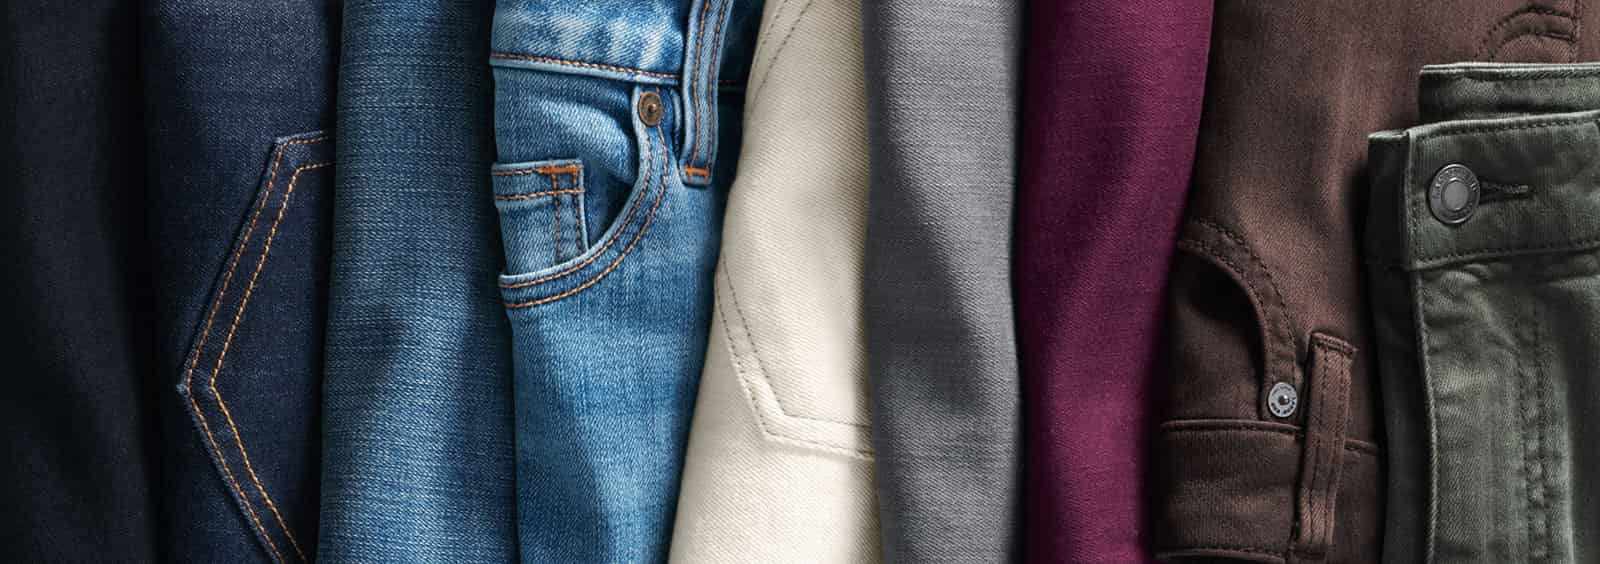 Was Sie bei der Suche nach einer neuen Jeans beachten sollten